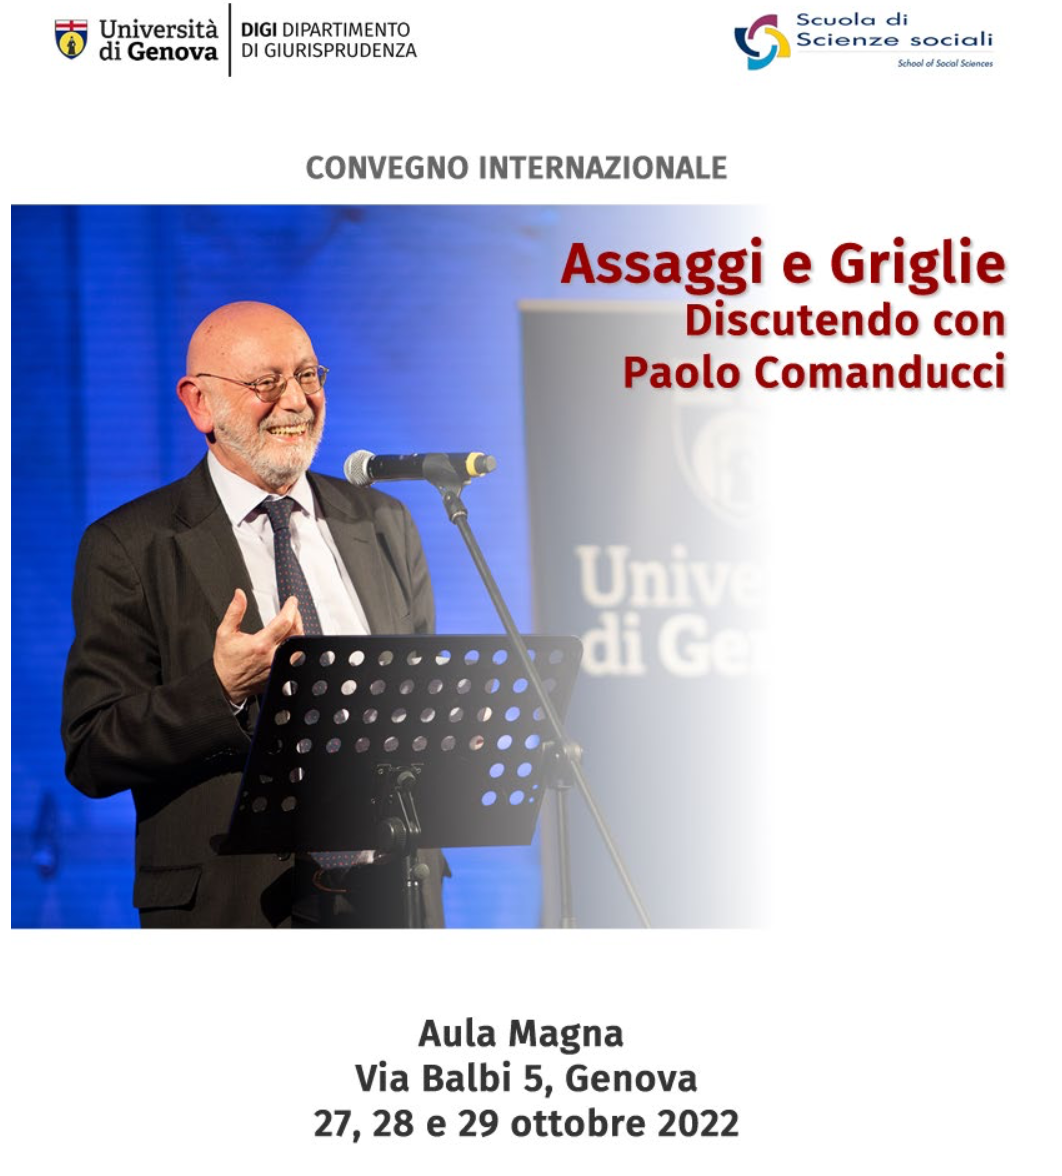 (Italiano) Dal 27 al 29 ottobre 2022 – Convegno internazionale “Assaggi e Griglie. Discutendo con Paolo Comanducci”